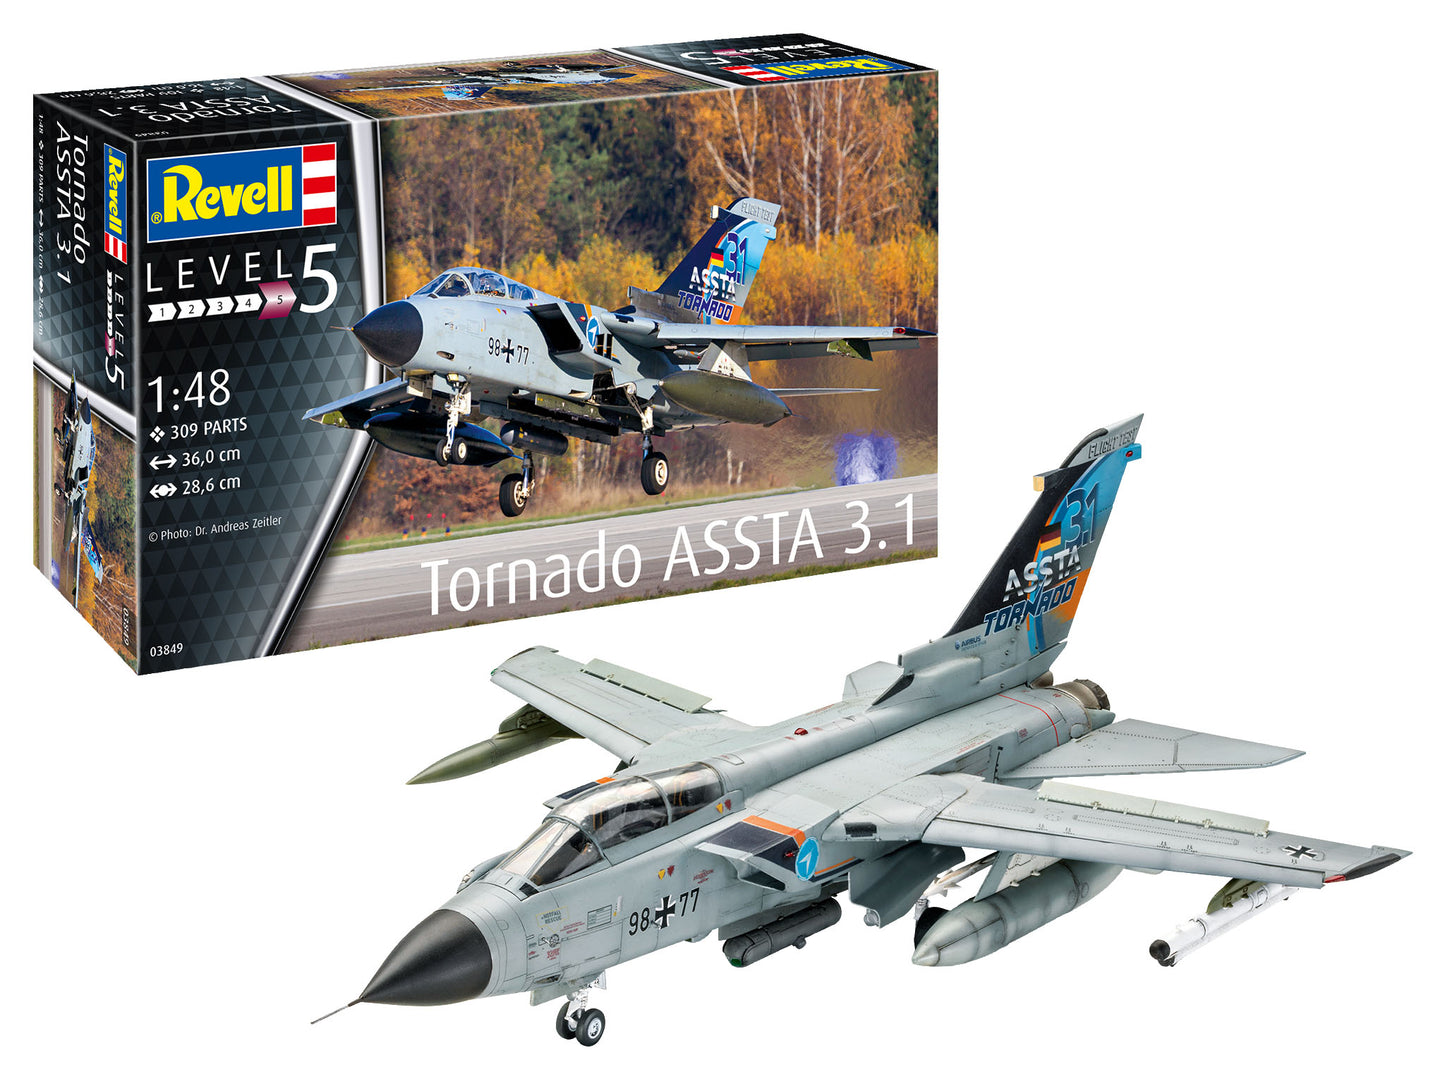 Plane Model Kit Revell Tornado ASSTA 3.1 1:48